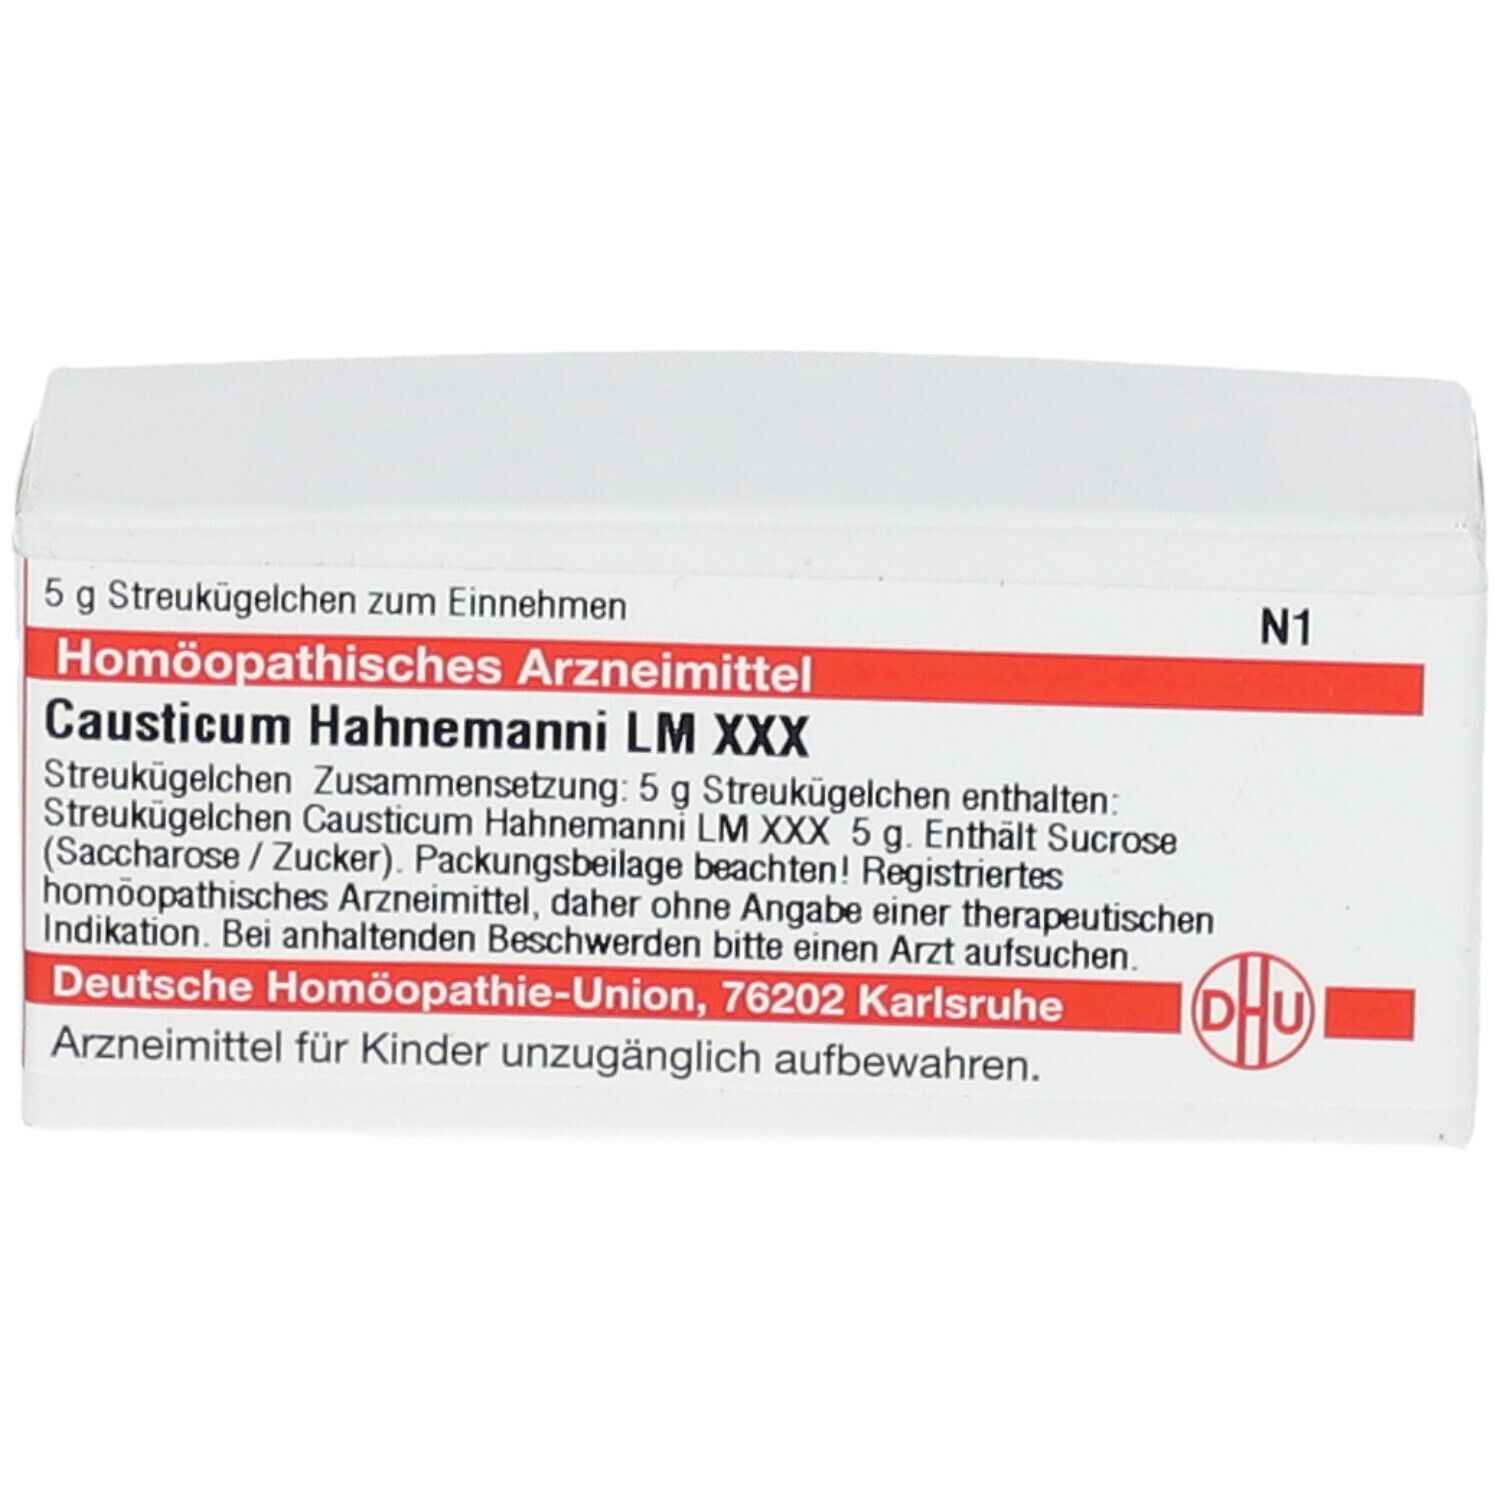 DHU Causticum Hahnemanni LM XXX